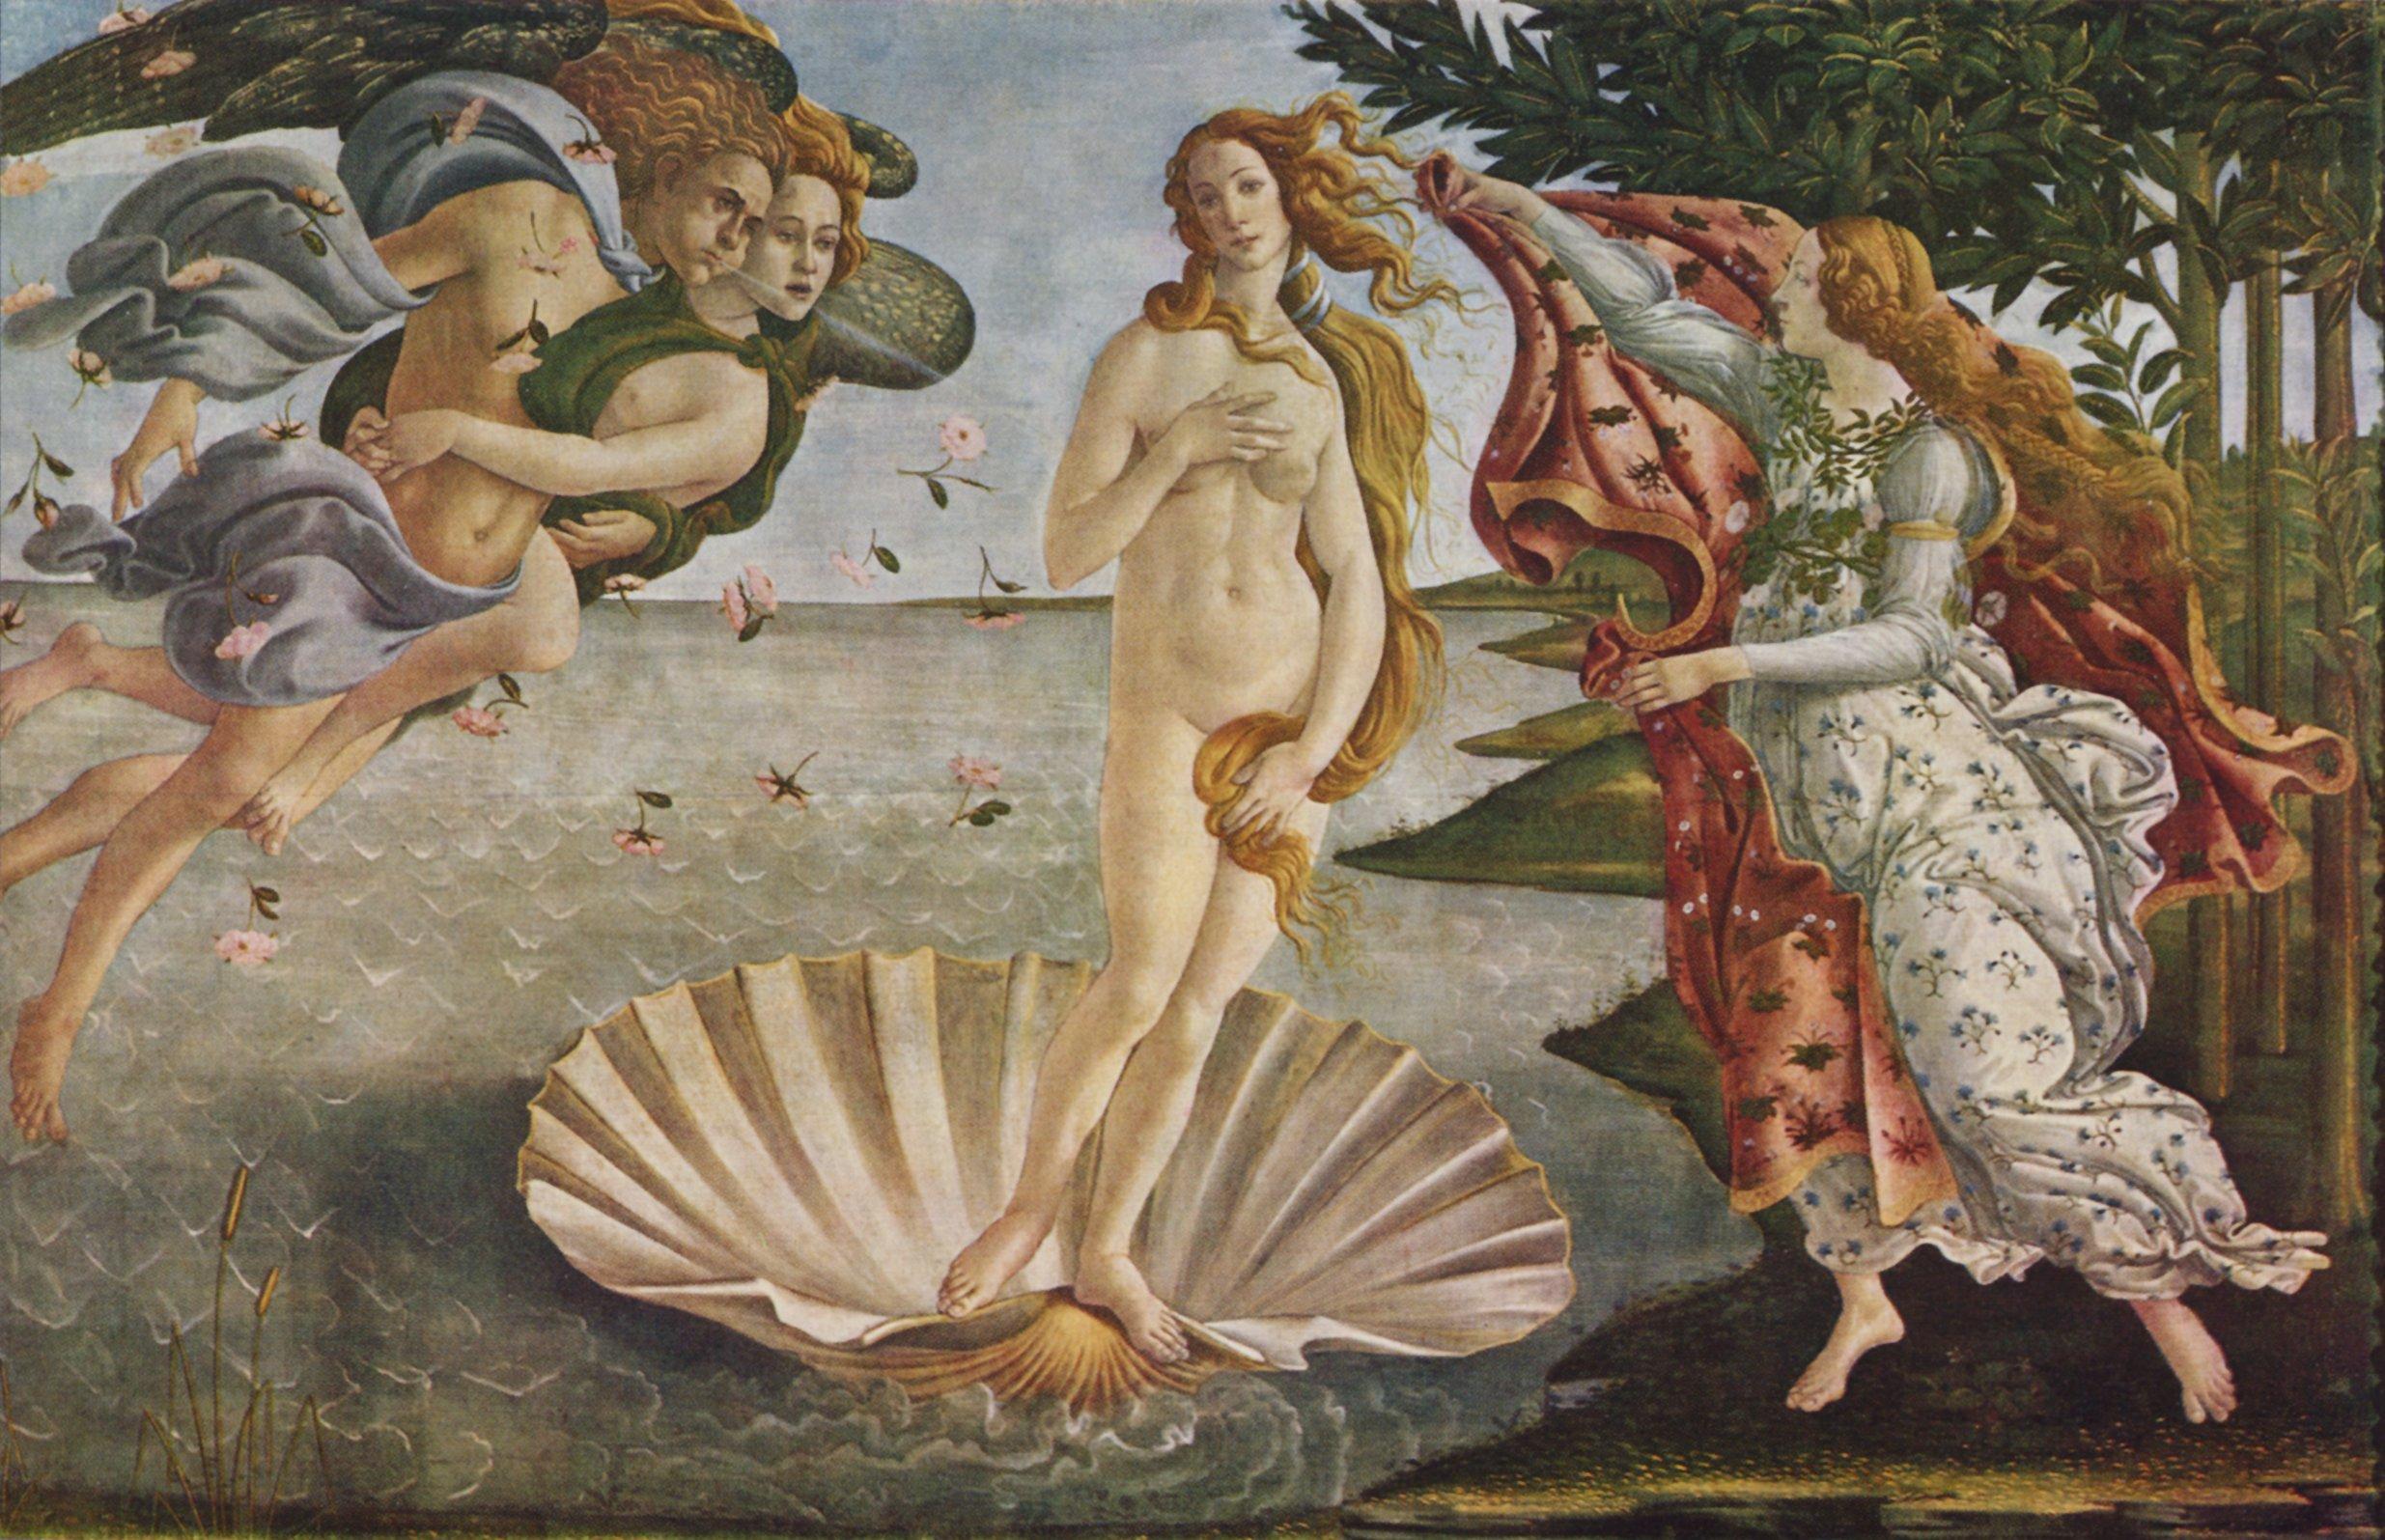 Espera un minuto a pesar de Peatonal Sandro Botticelli, "El nacimiento de Venus". Temple sobre lienzo, 1482-1484  - Departamento de Educación Departamento de Educación